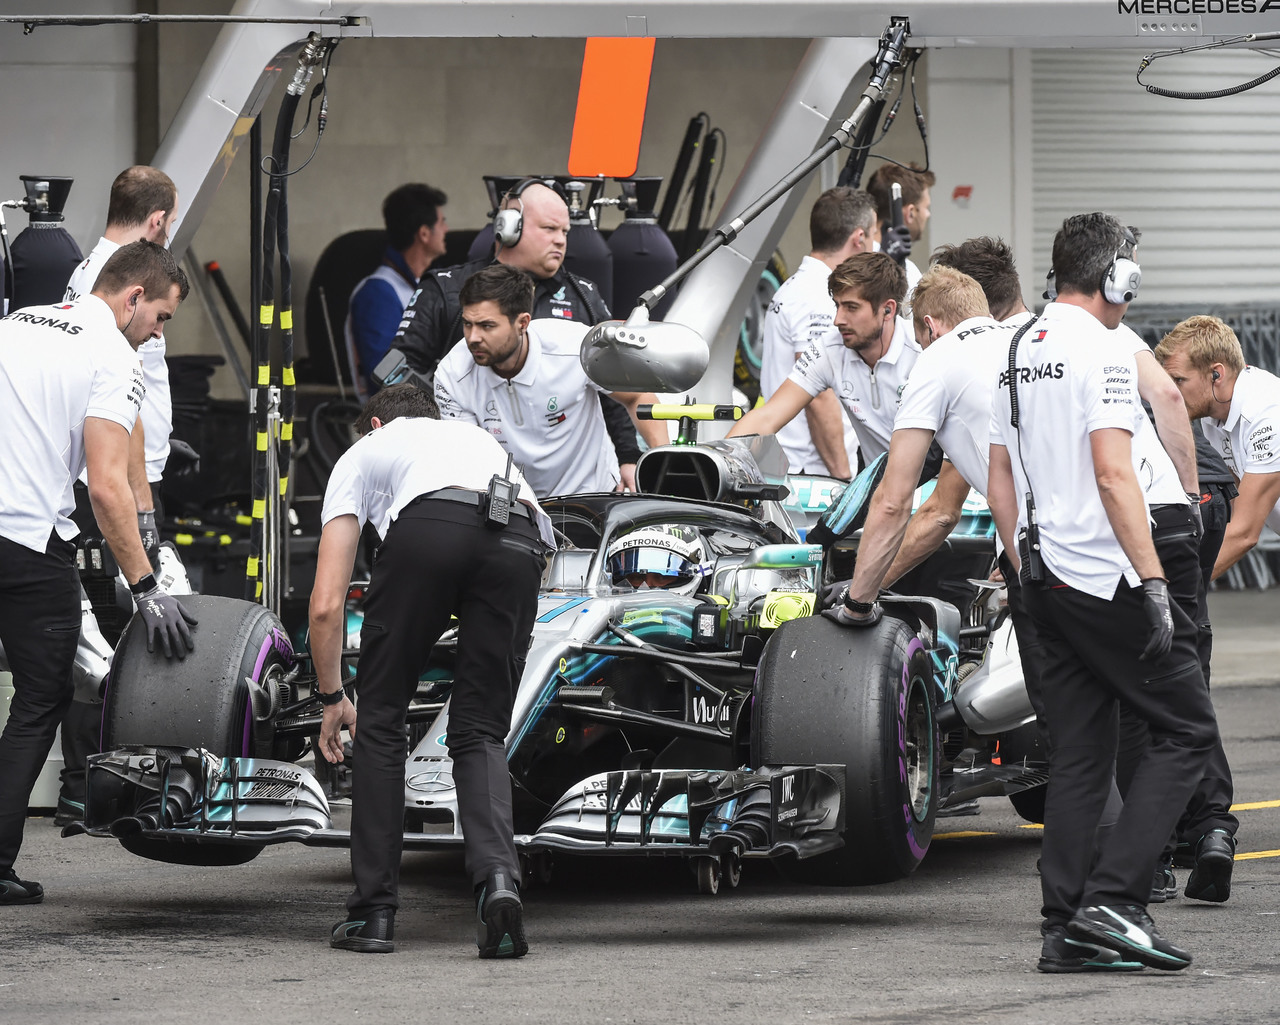 El británico de Mercedes Lewis Hamilton partirá tercero en la parrilla de salida hoy; quiere coronarse y festejar en el podio.